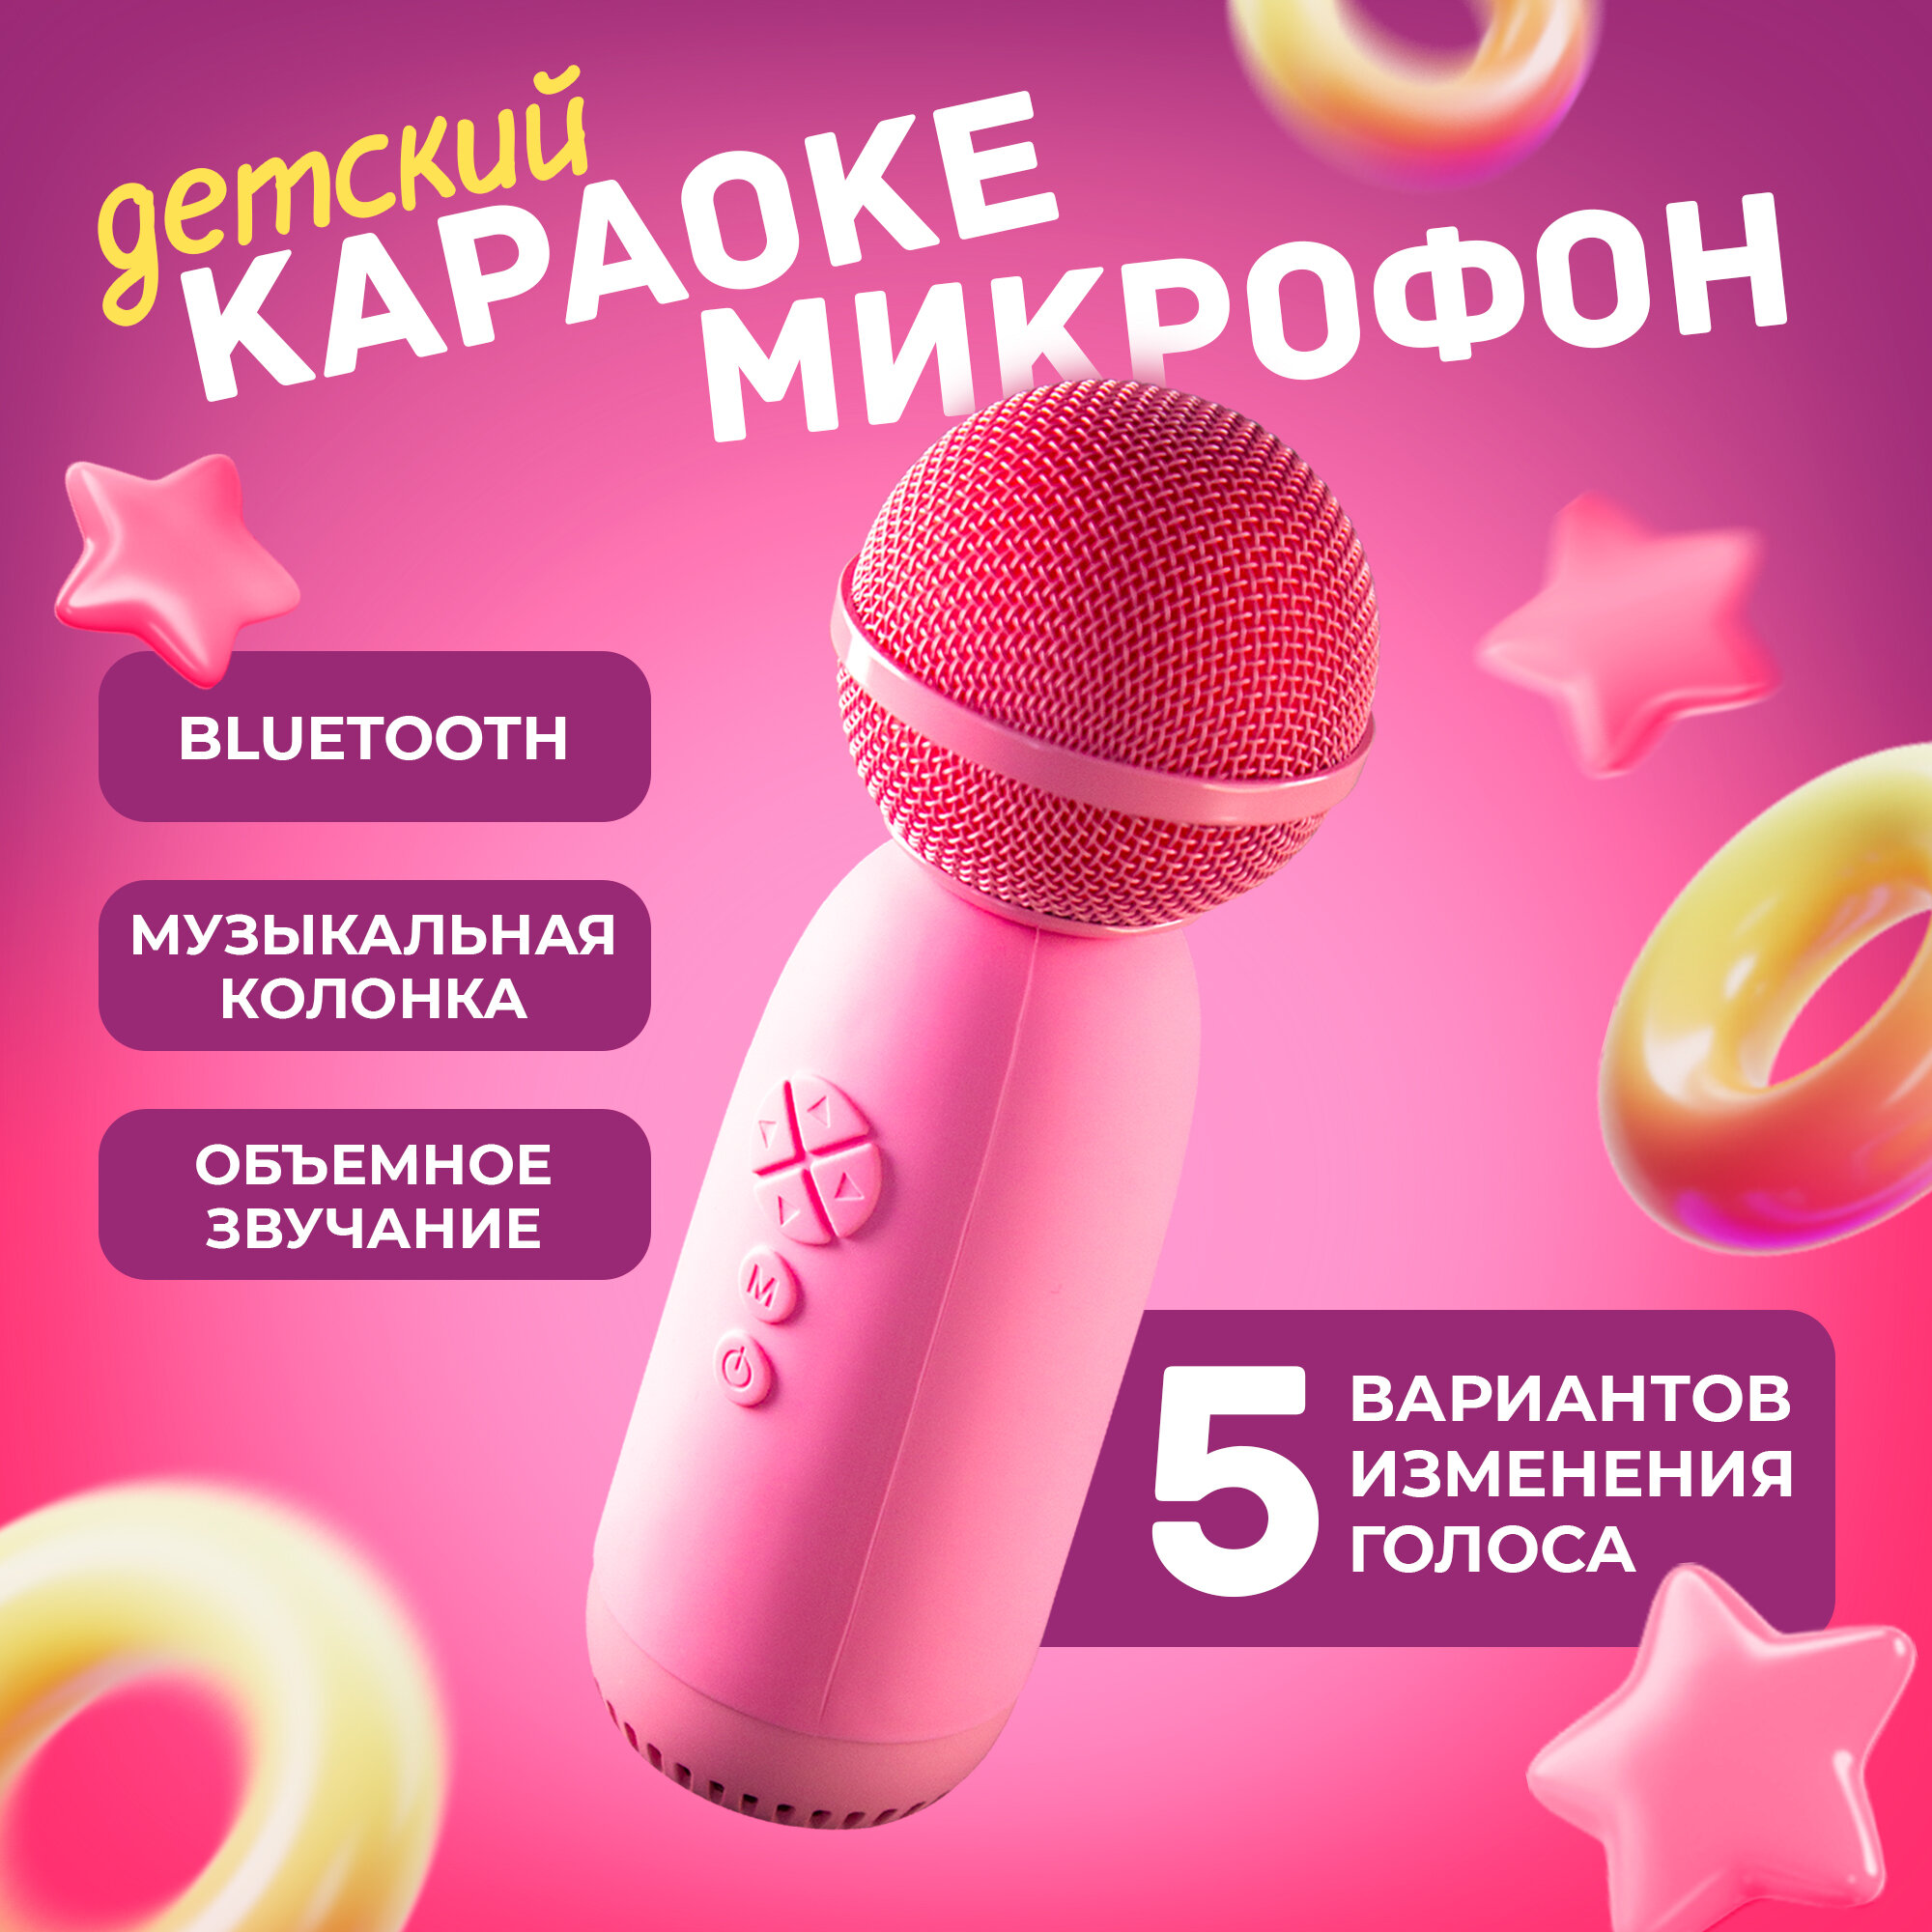 Микрофон караоке детский беспроводной для телефона, AMFOX, ASP-070, профессиональная система для дома, студийная колонка для пения, блютуз, розовая